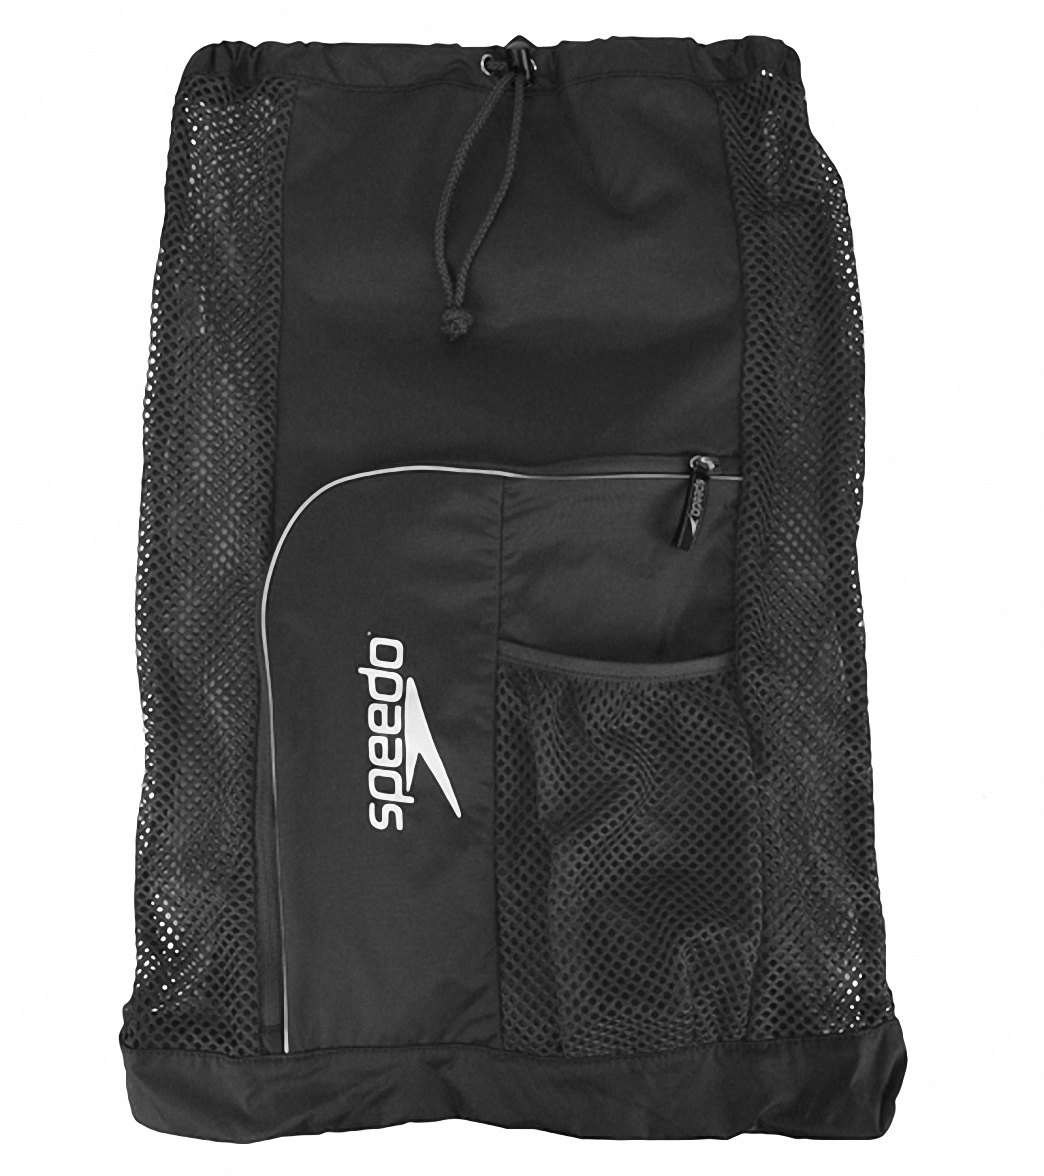 Speedo Deluxe Ventilator Mesh Bag - Black - Swimoutlet.com